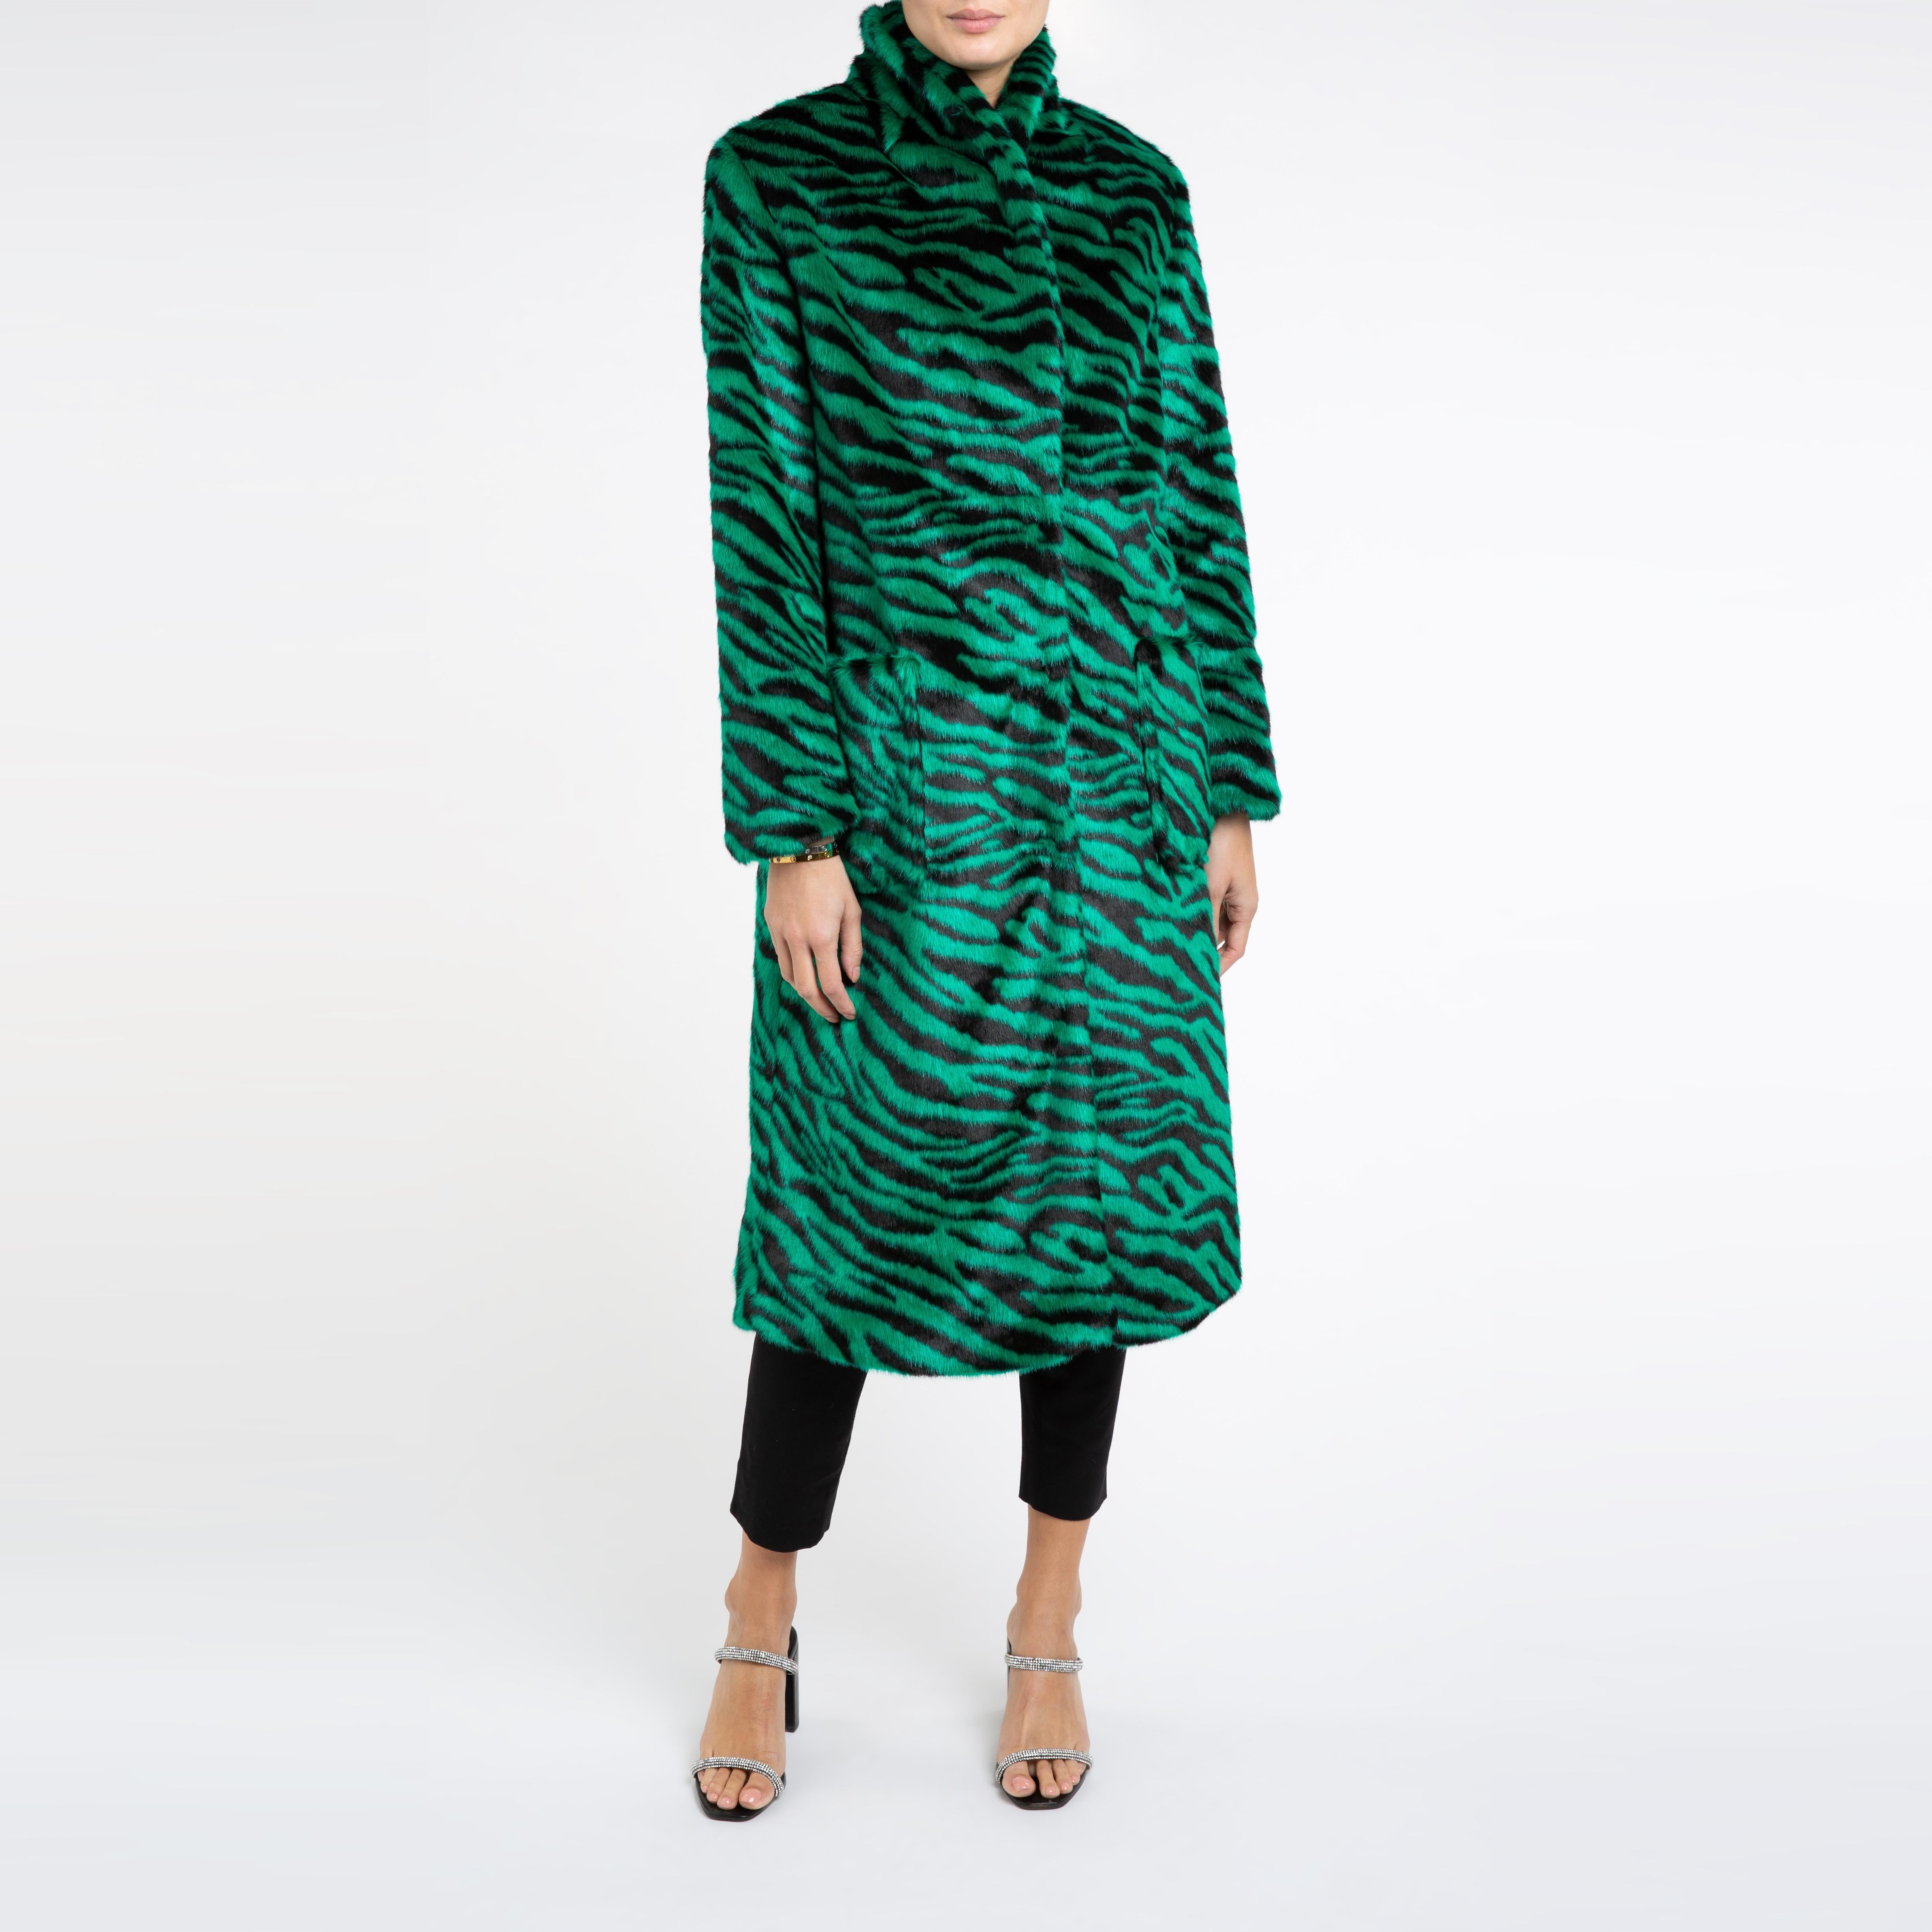 Verheyen London Esmeralda Faux Fur Coat in Emerald Green Zebra Print size uk 12 For Sale 2